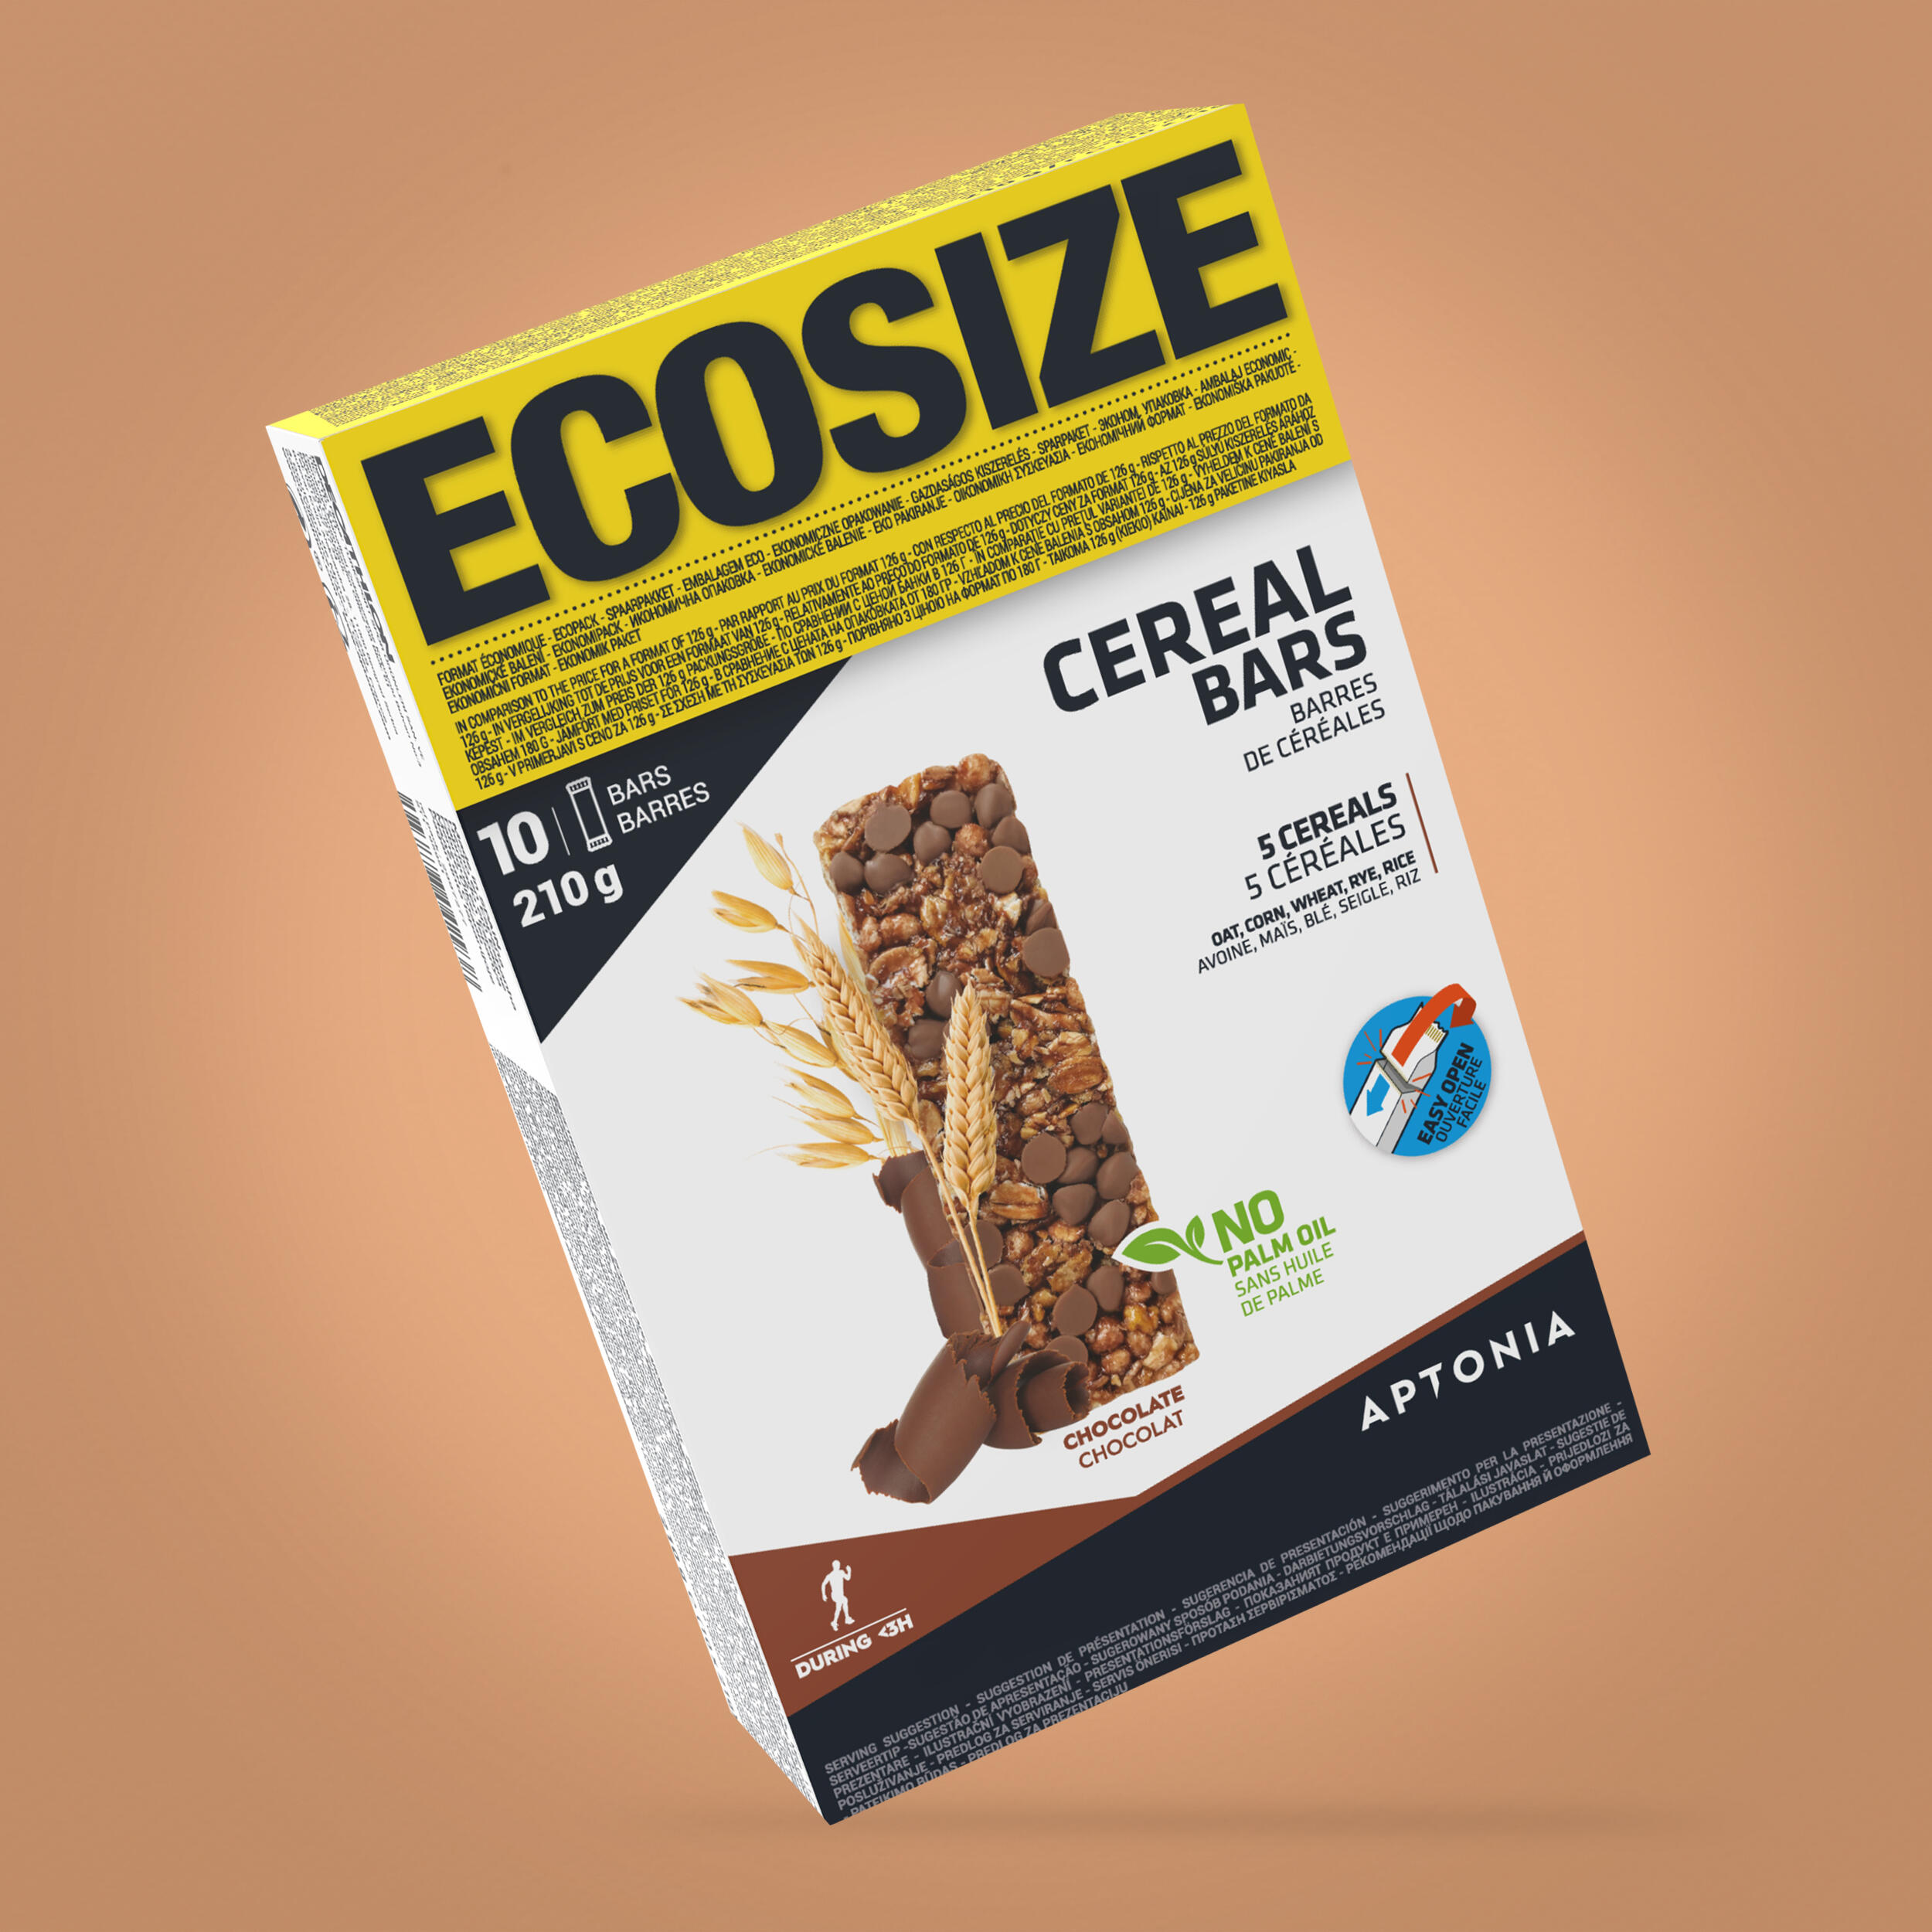 Baton cereale ciocolată Ecosize Clak 10x21g APTONIA APTONIA